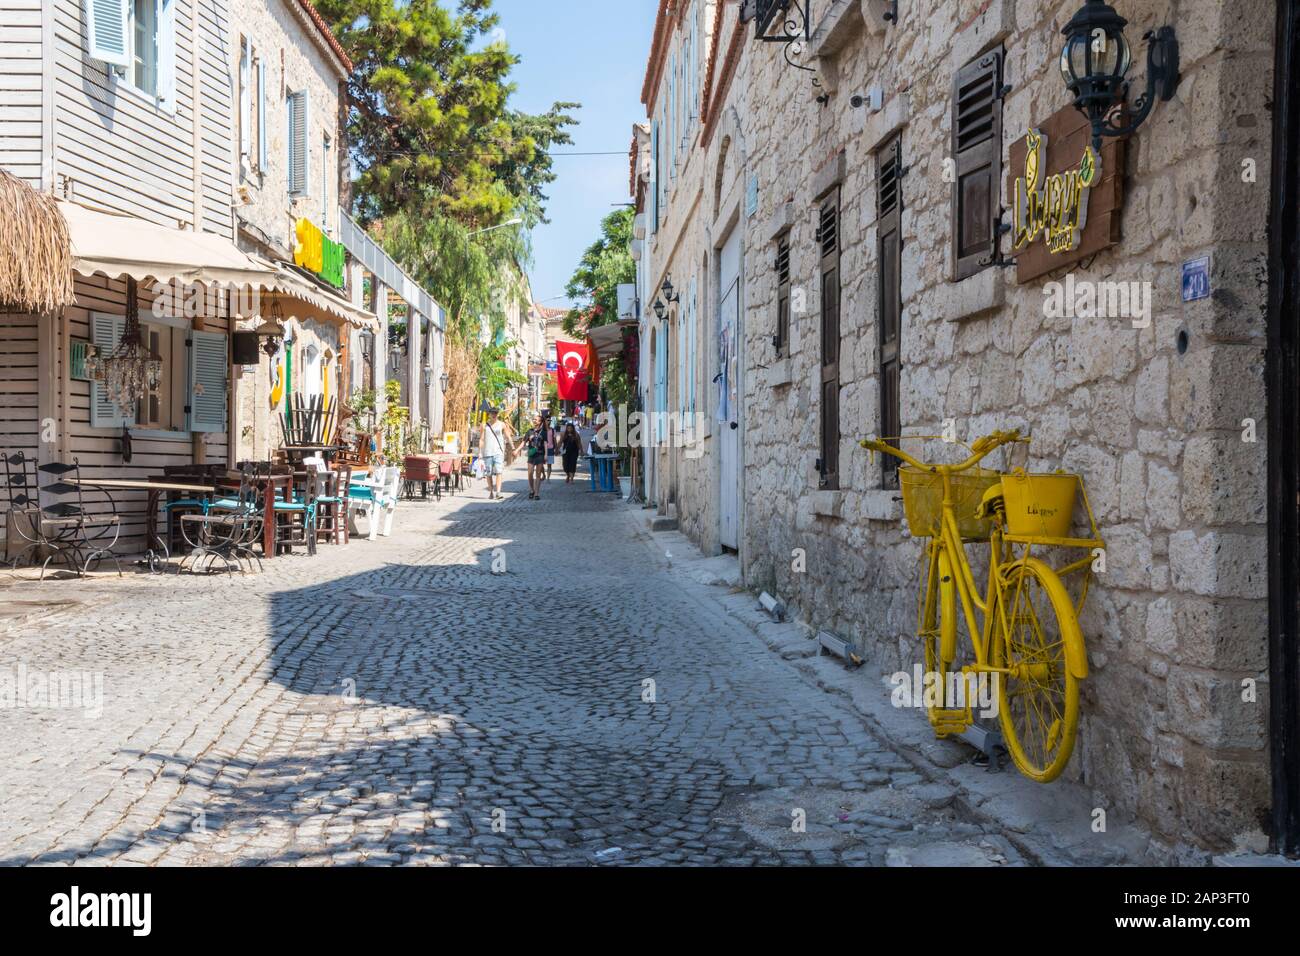 Alacati, Türkei - September 2019: Menschen gehen auf einer gepflasterten Straße und gelben Fahrrad. Viele Touristen besuchen die Stadt. Stockfoto